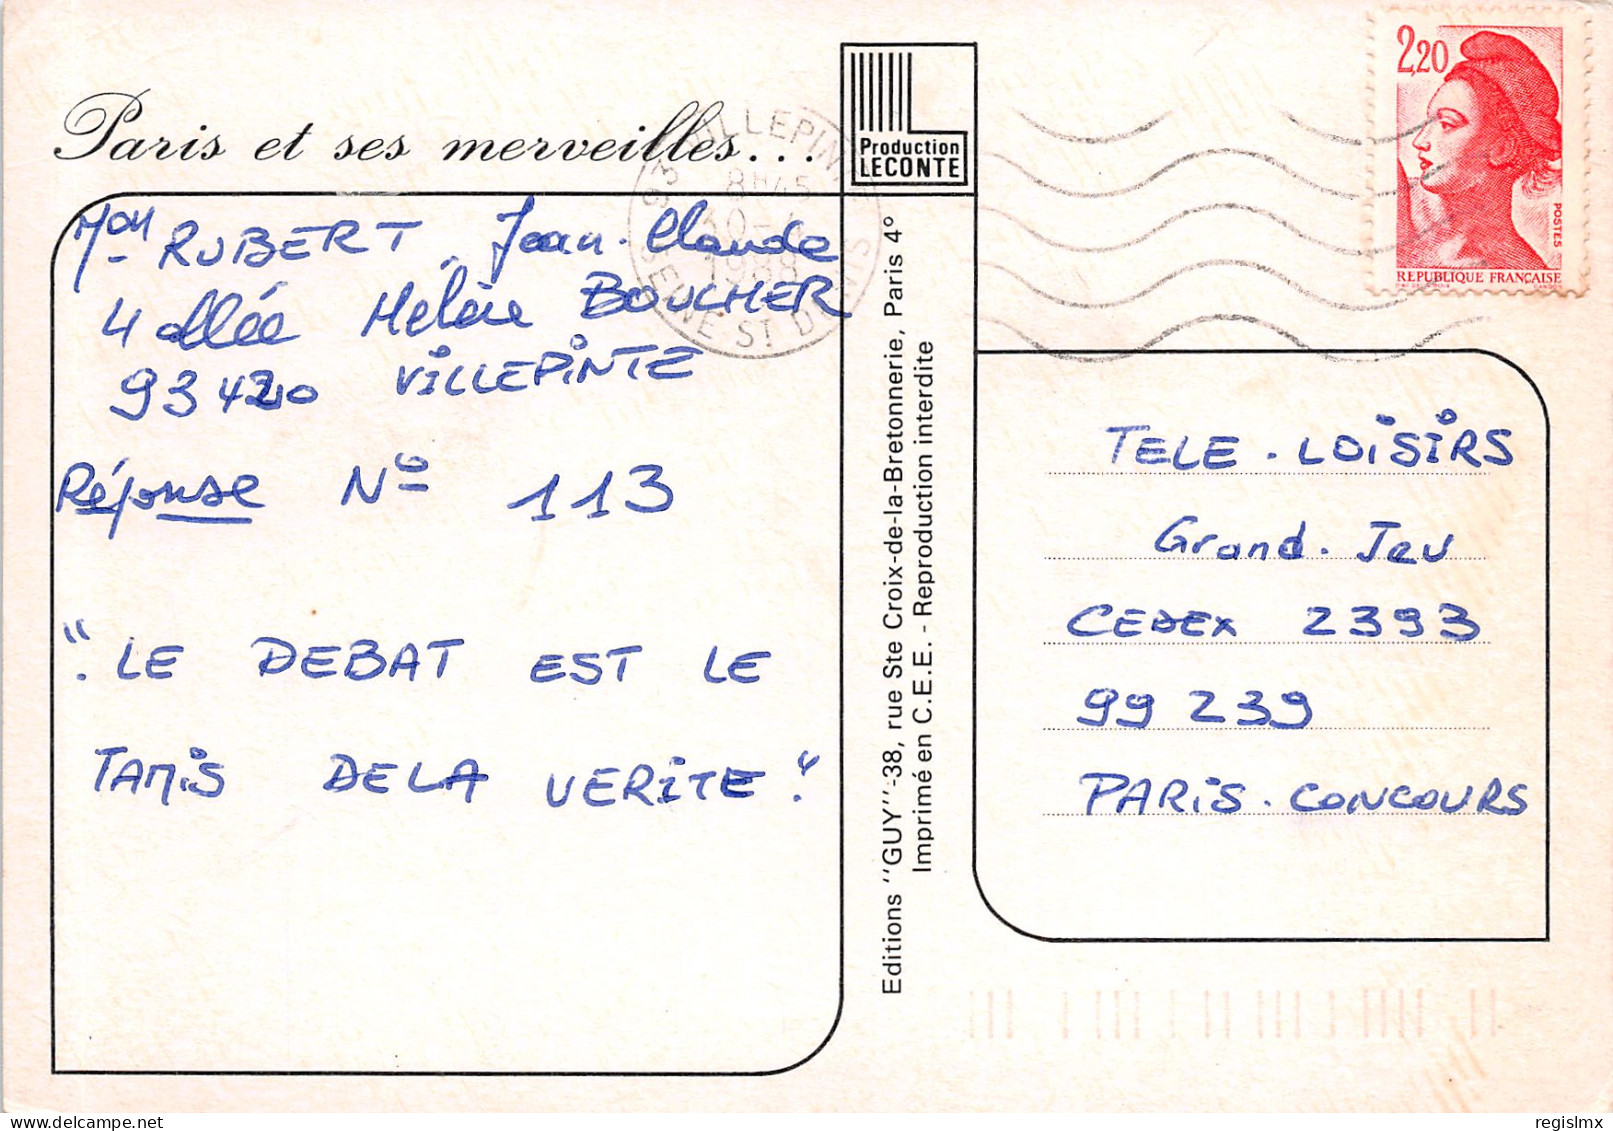 75-PARIS L ARC DE TRIOMPHE-N°T2655-D/0021 - Arc De Triomphe